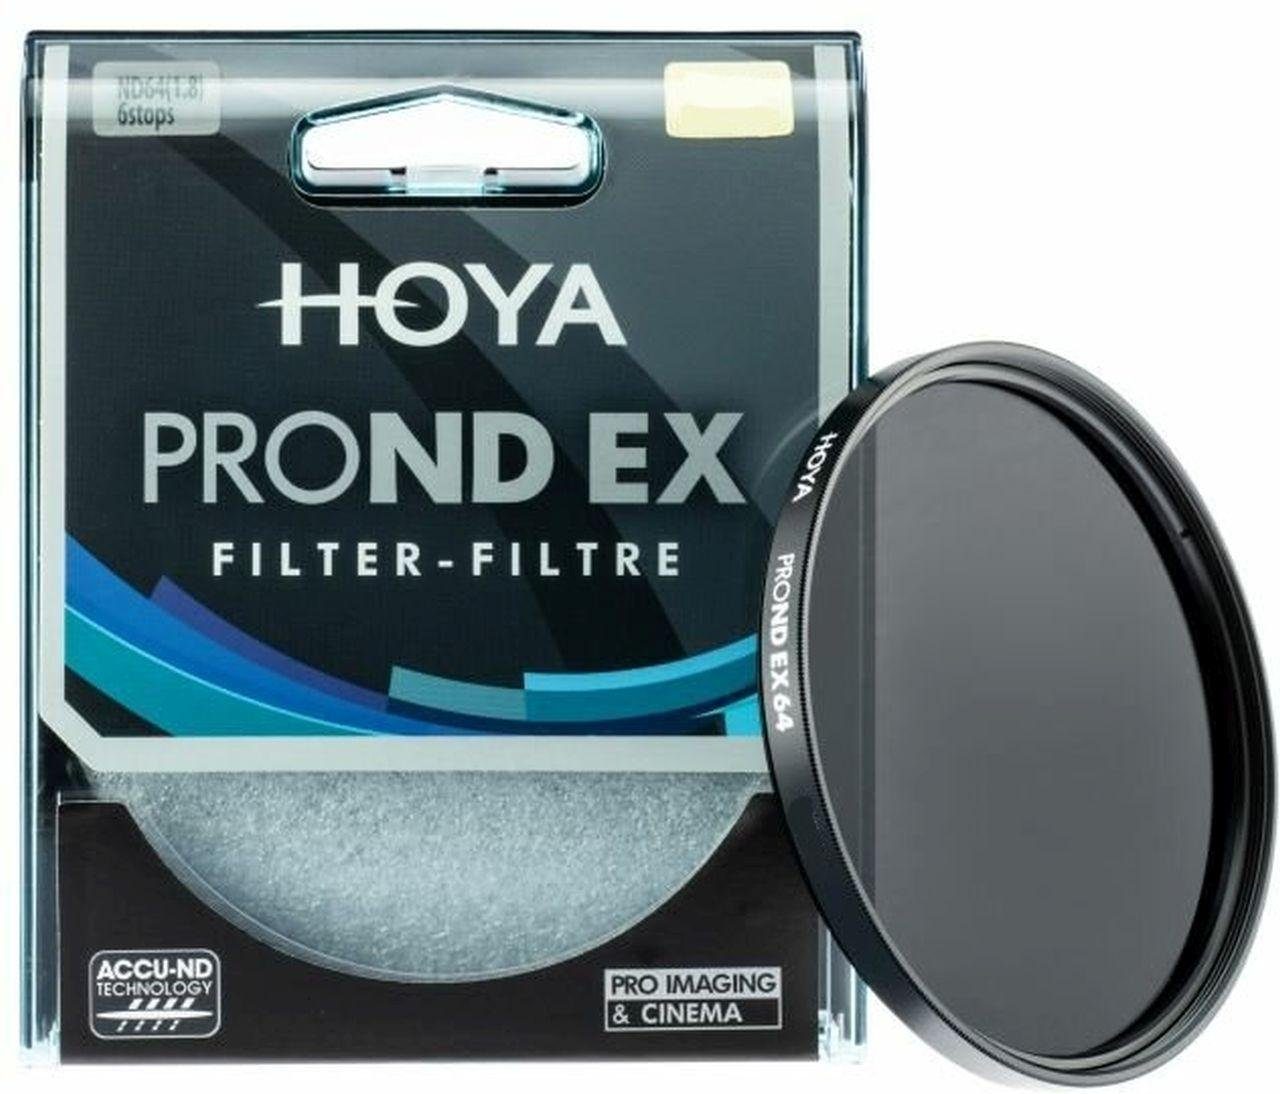 Hoya PROND EX Filter ND64 72mm Objektivzubehör